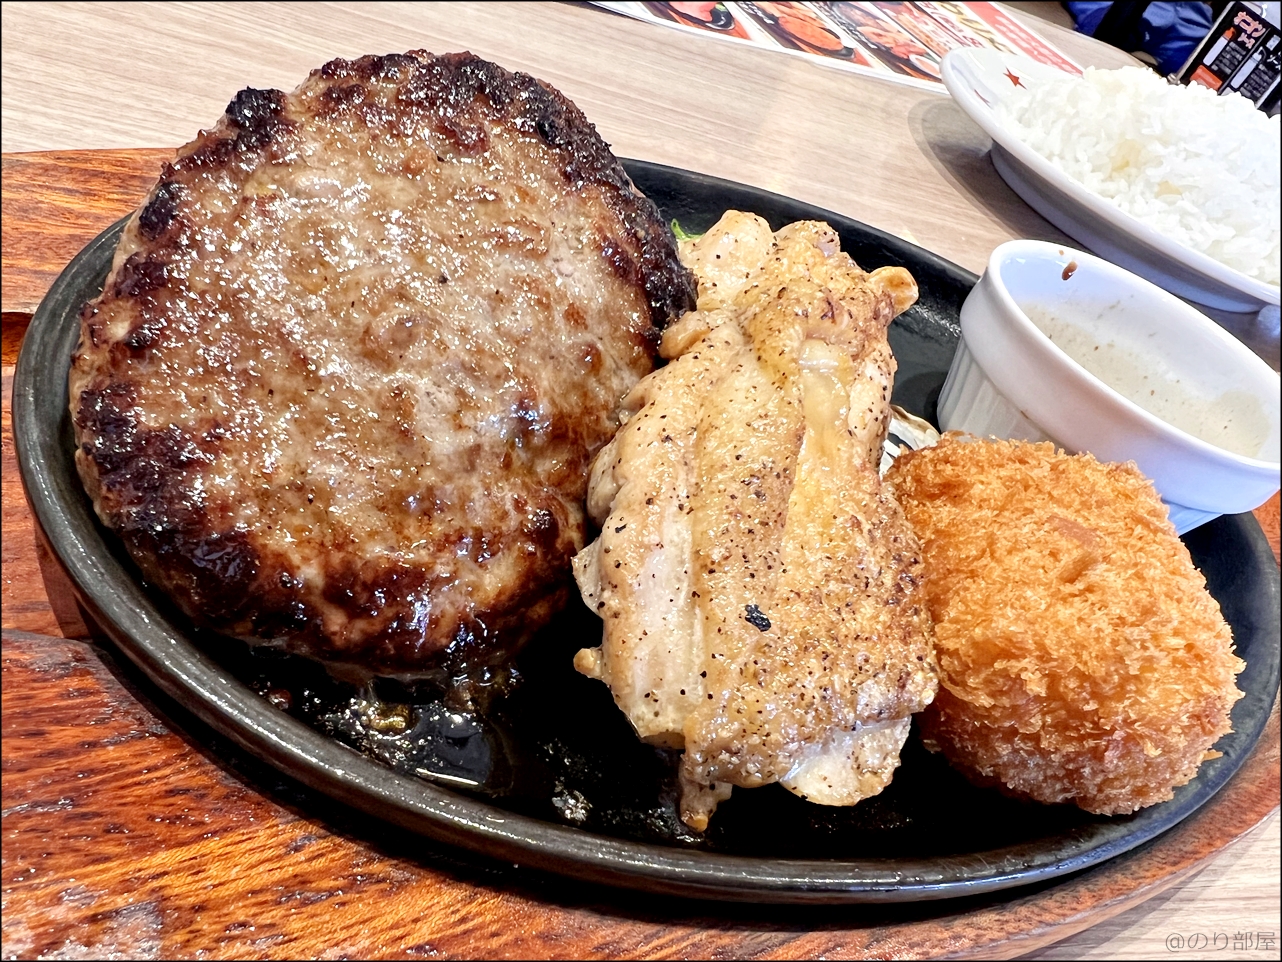 ステーキのどんのランチのハンバーグ(130g)、チキン、カニクリームコロッケがボリュームあってオススメ！ ステーキのどんのランチがお得!ライス･パン･スープがおかわり自由で1000円以内!